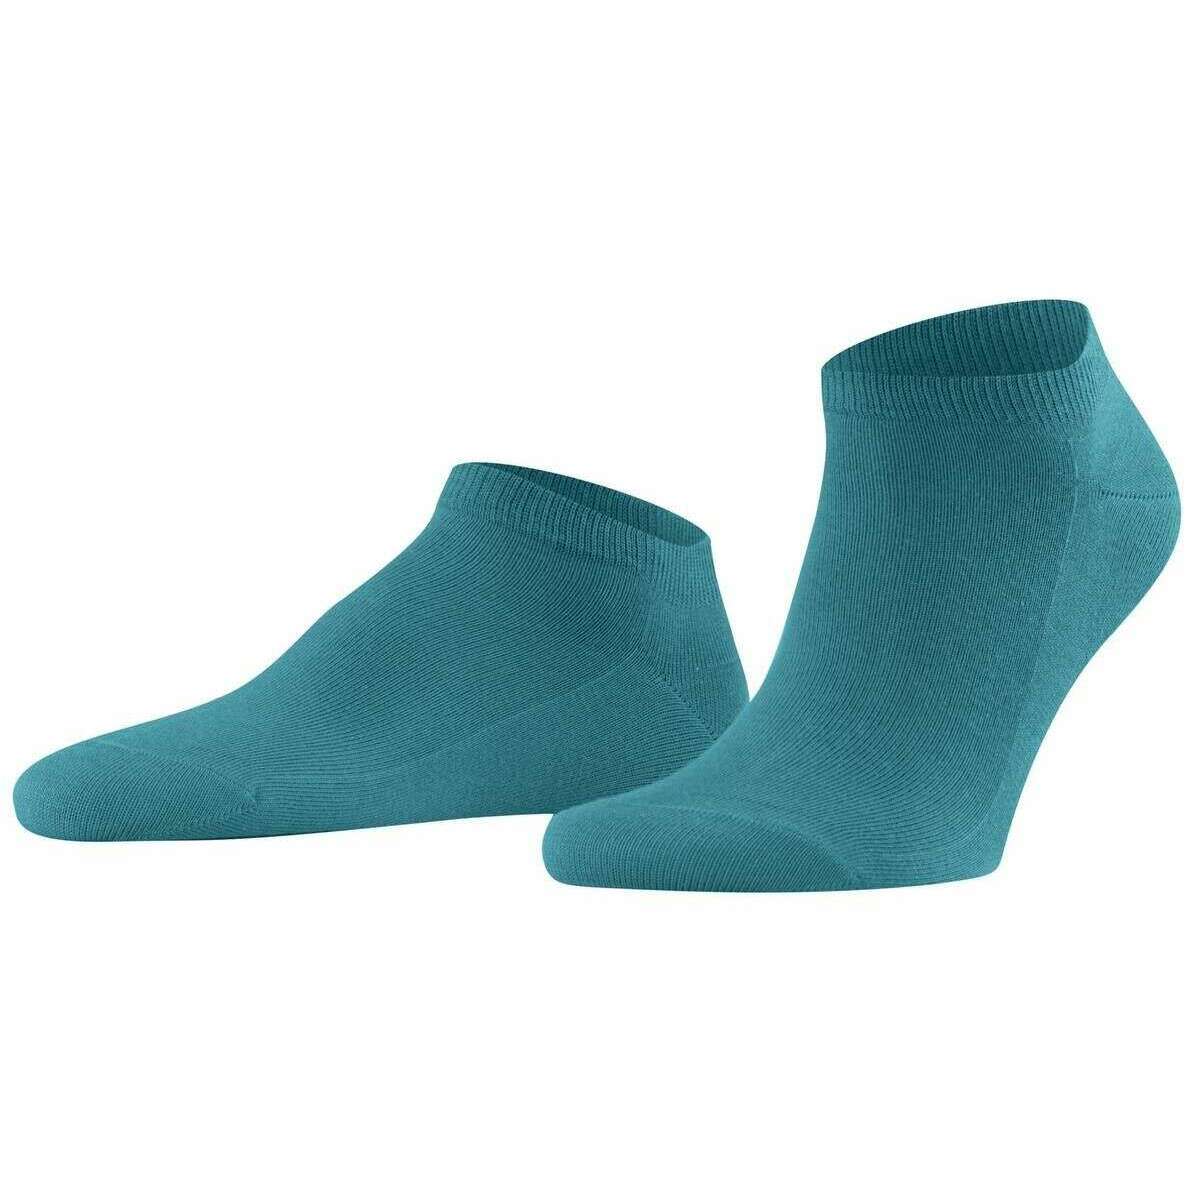 Falke Family Sneaker Socks - Peacock Blue